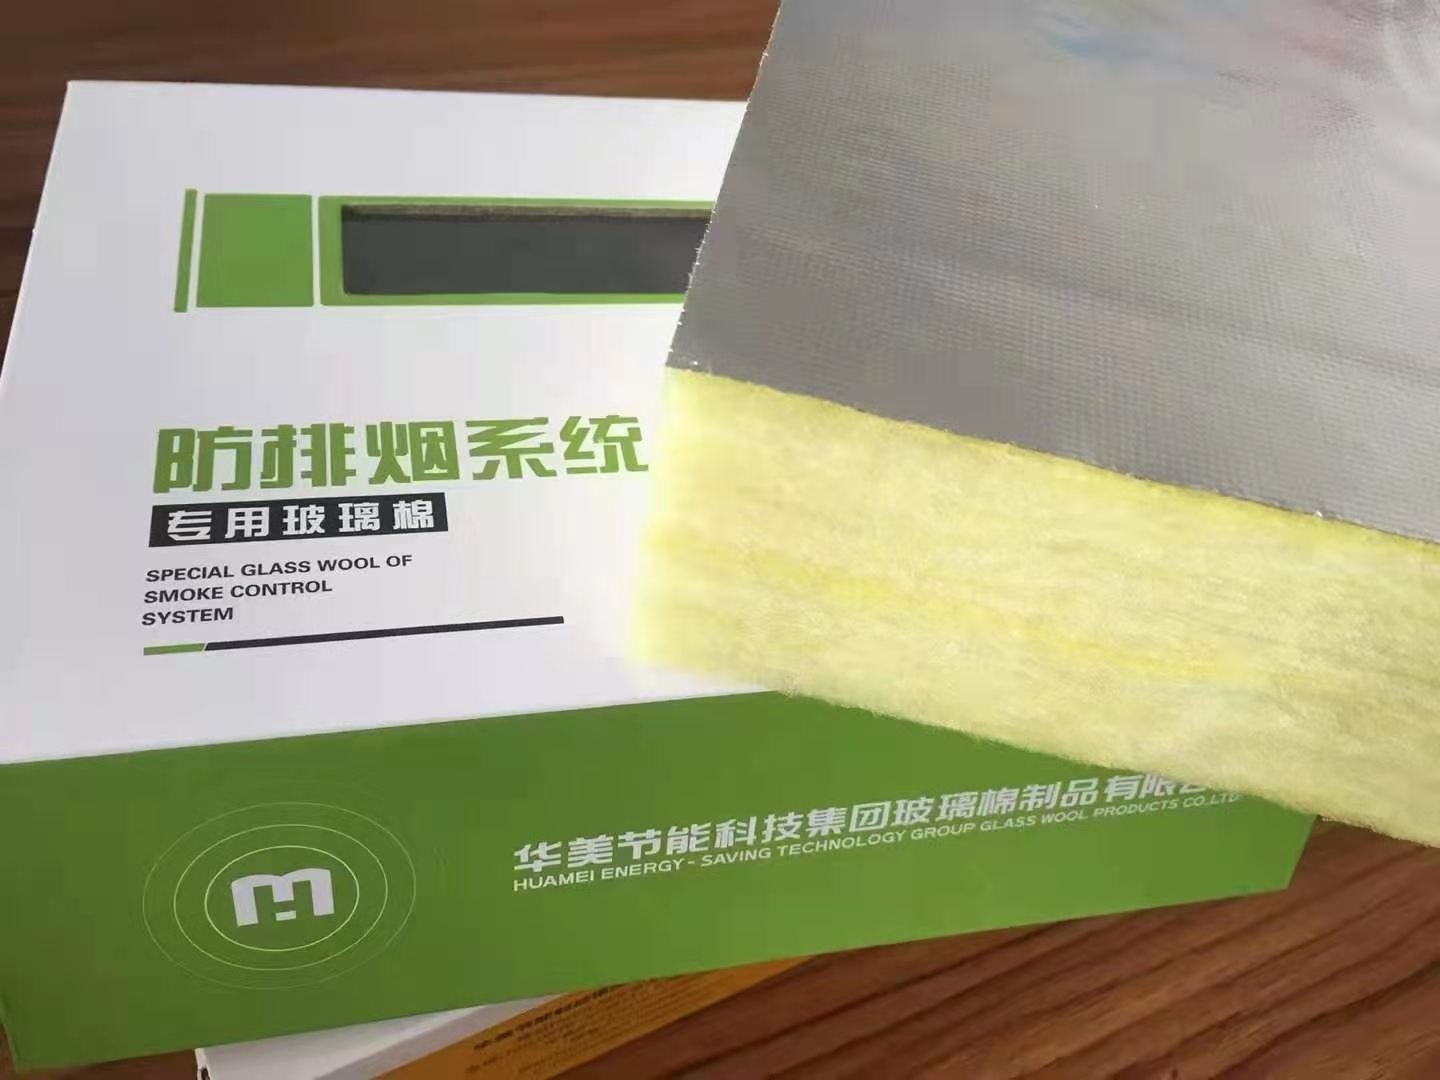 上海华美64K玻璃棉华美金属管道绝热软包裹材料耐火极限1小时